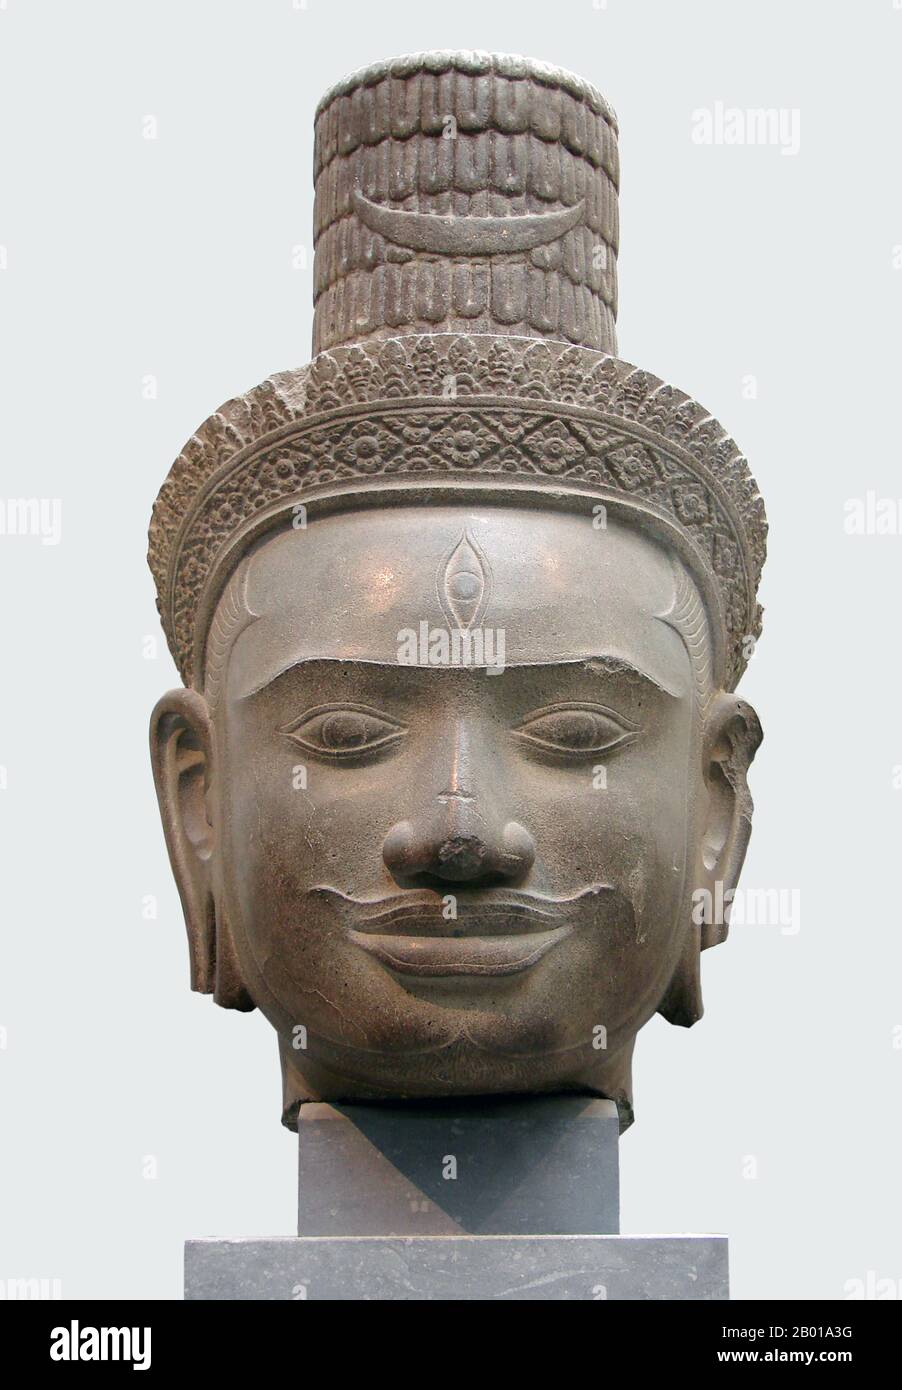 Cambogia: Capo di Shiva da Phnom Bok, Siem Reap, ora nel Musée Guimet, Parigi, 9th-10th secolo. Phnom Bok è una collina nel nord-est del Baray orientale in Cambogia, con un prasat (tempio) dello stesso nome costruito su di esso. Si tratta di una 'trilogia di montagne', ognuna delle quali ha un tempio con una disposizione simile. La creazione del tempio è accreditata al regno di Yasovarman i (889–910) tra i secoli 9th e 10th ed è stata fondata dopo che ha spostato la sua capitale ad Angkor e la ha chiamata Yasodharapura. Gli altri due templi gemellati sono Phnom Bakheng e Phnom Krom. Foto Stock